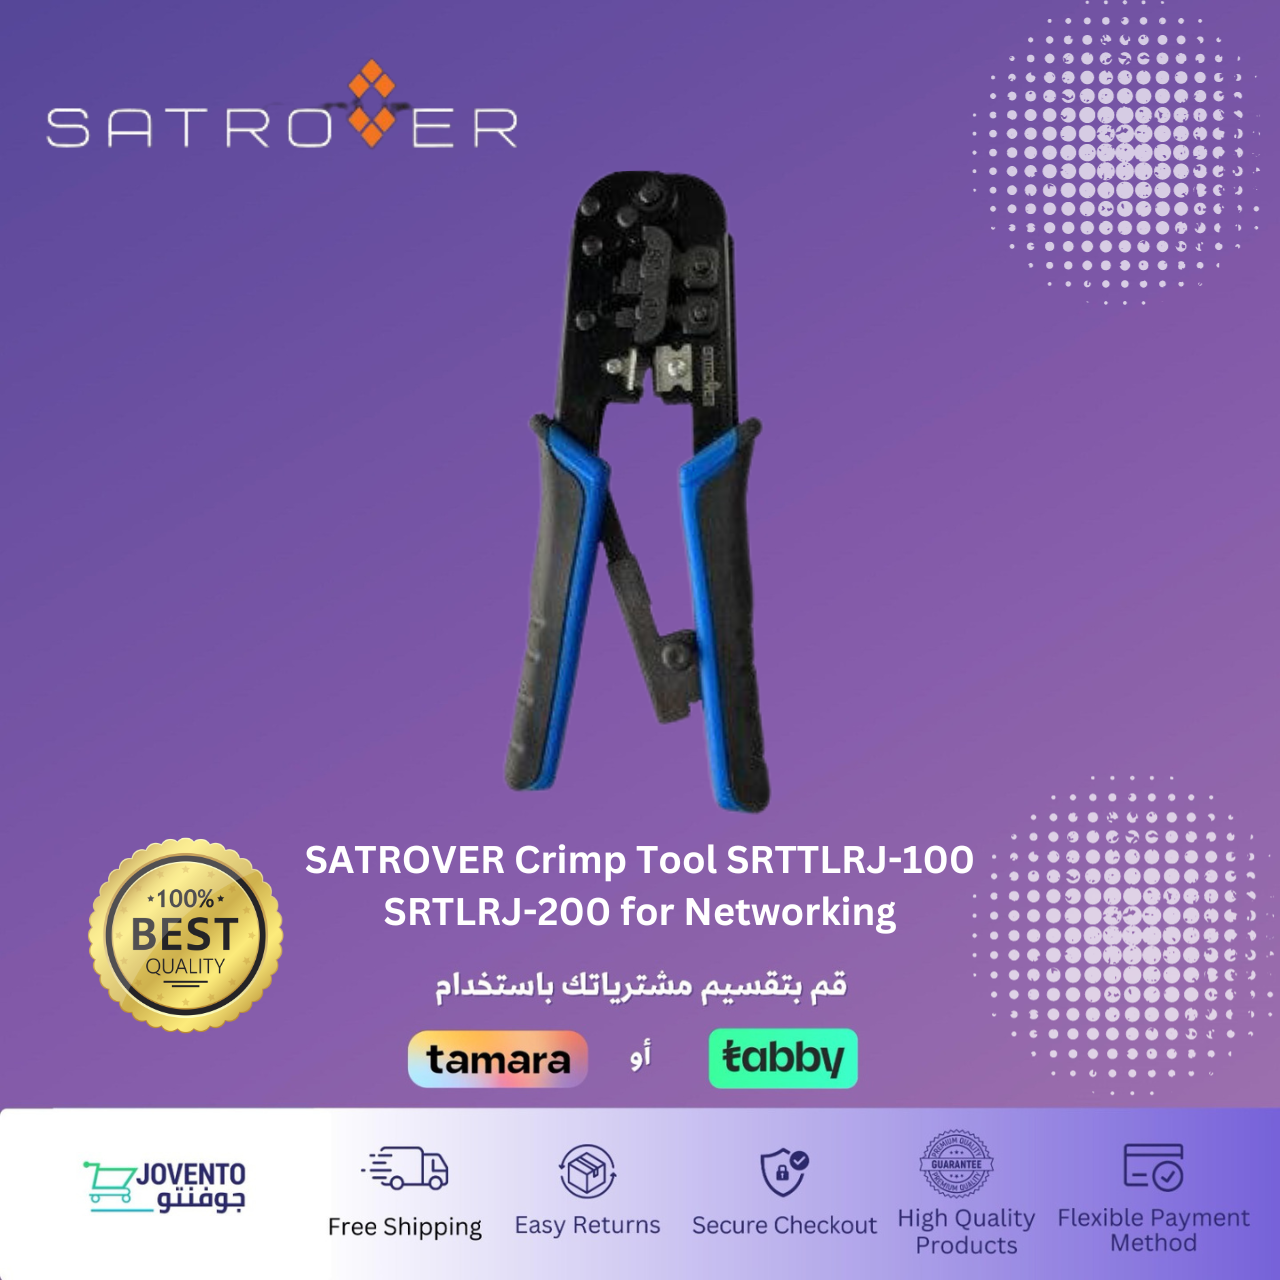 SATROVER Crimp Tool SRTTLRJ-100 SRTLRJ-200 for Networking